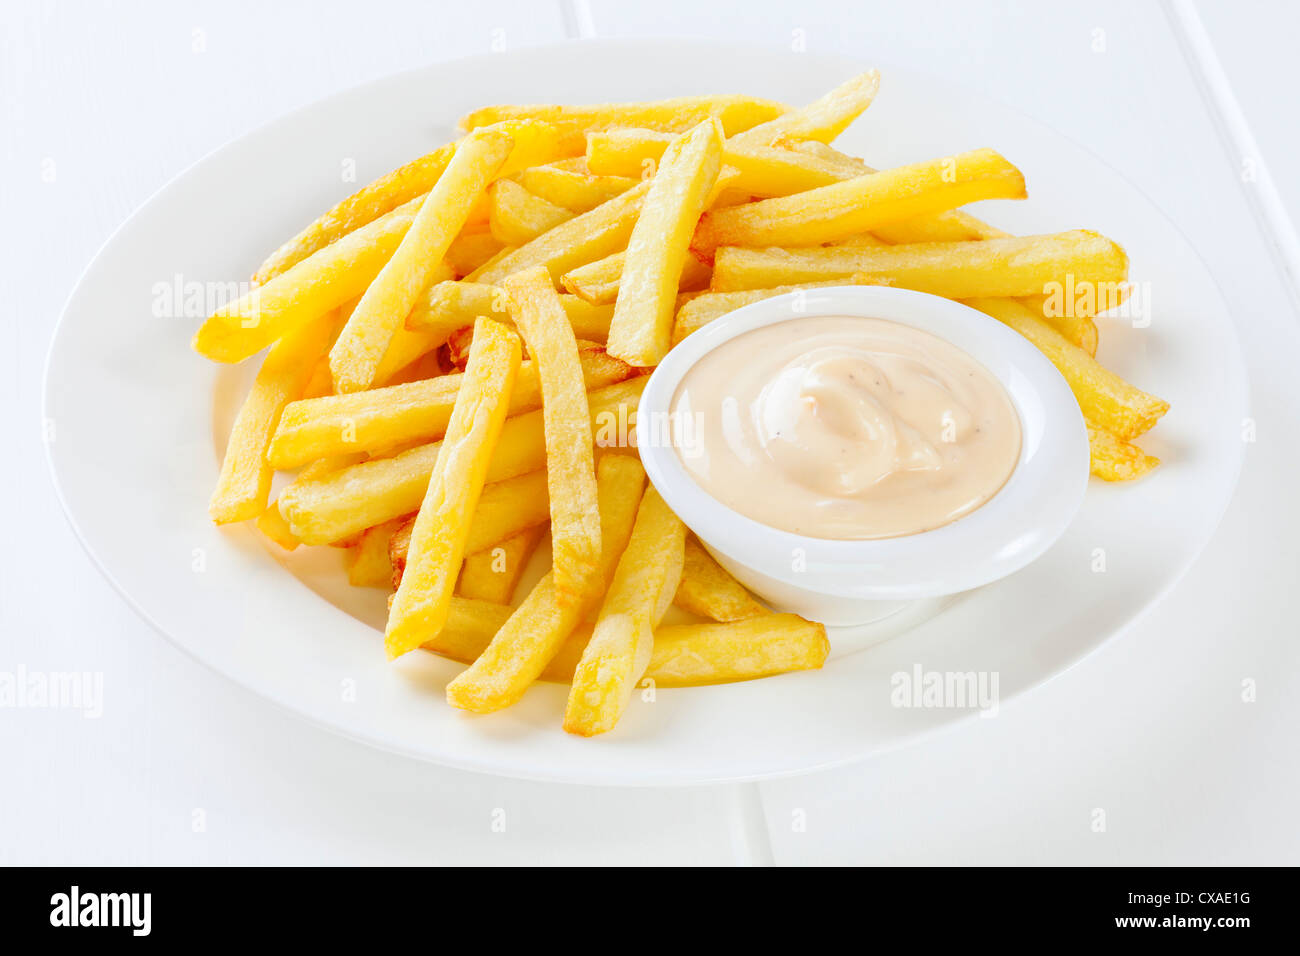 Un plato de patatas fritas con mayonesa en un pequeño recipiente. Foto de stock